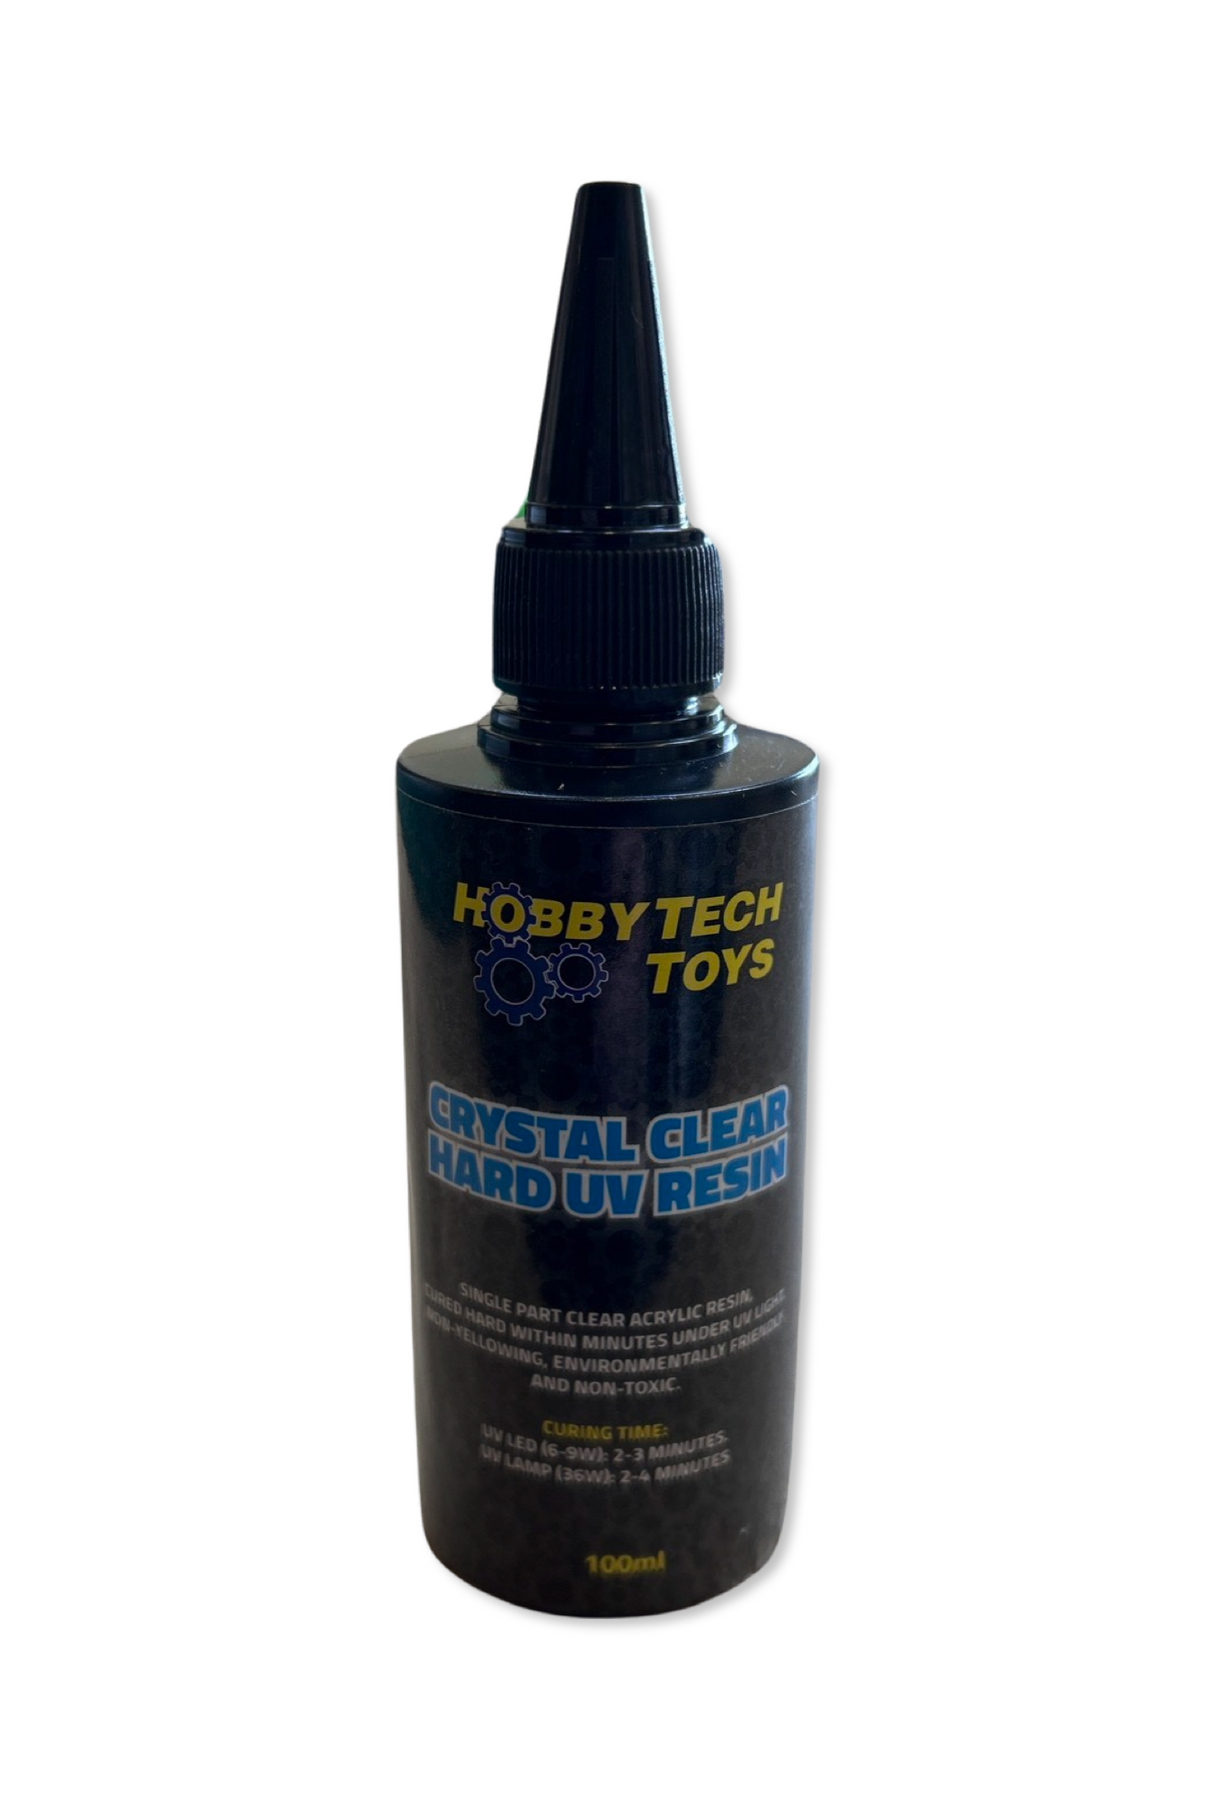 Hobbytech Crystal Clear Hard UV Resin - 100ml - Hobbytech Toys